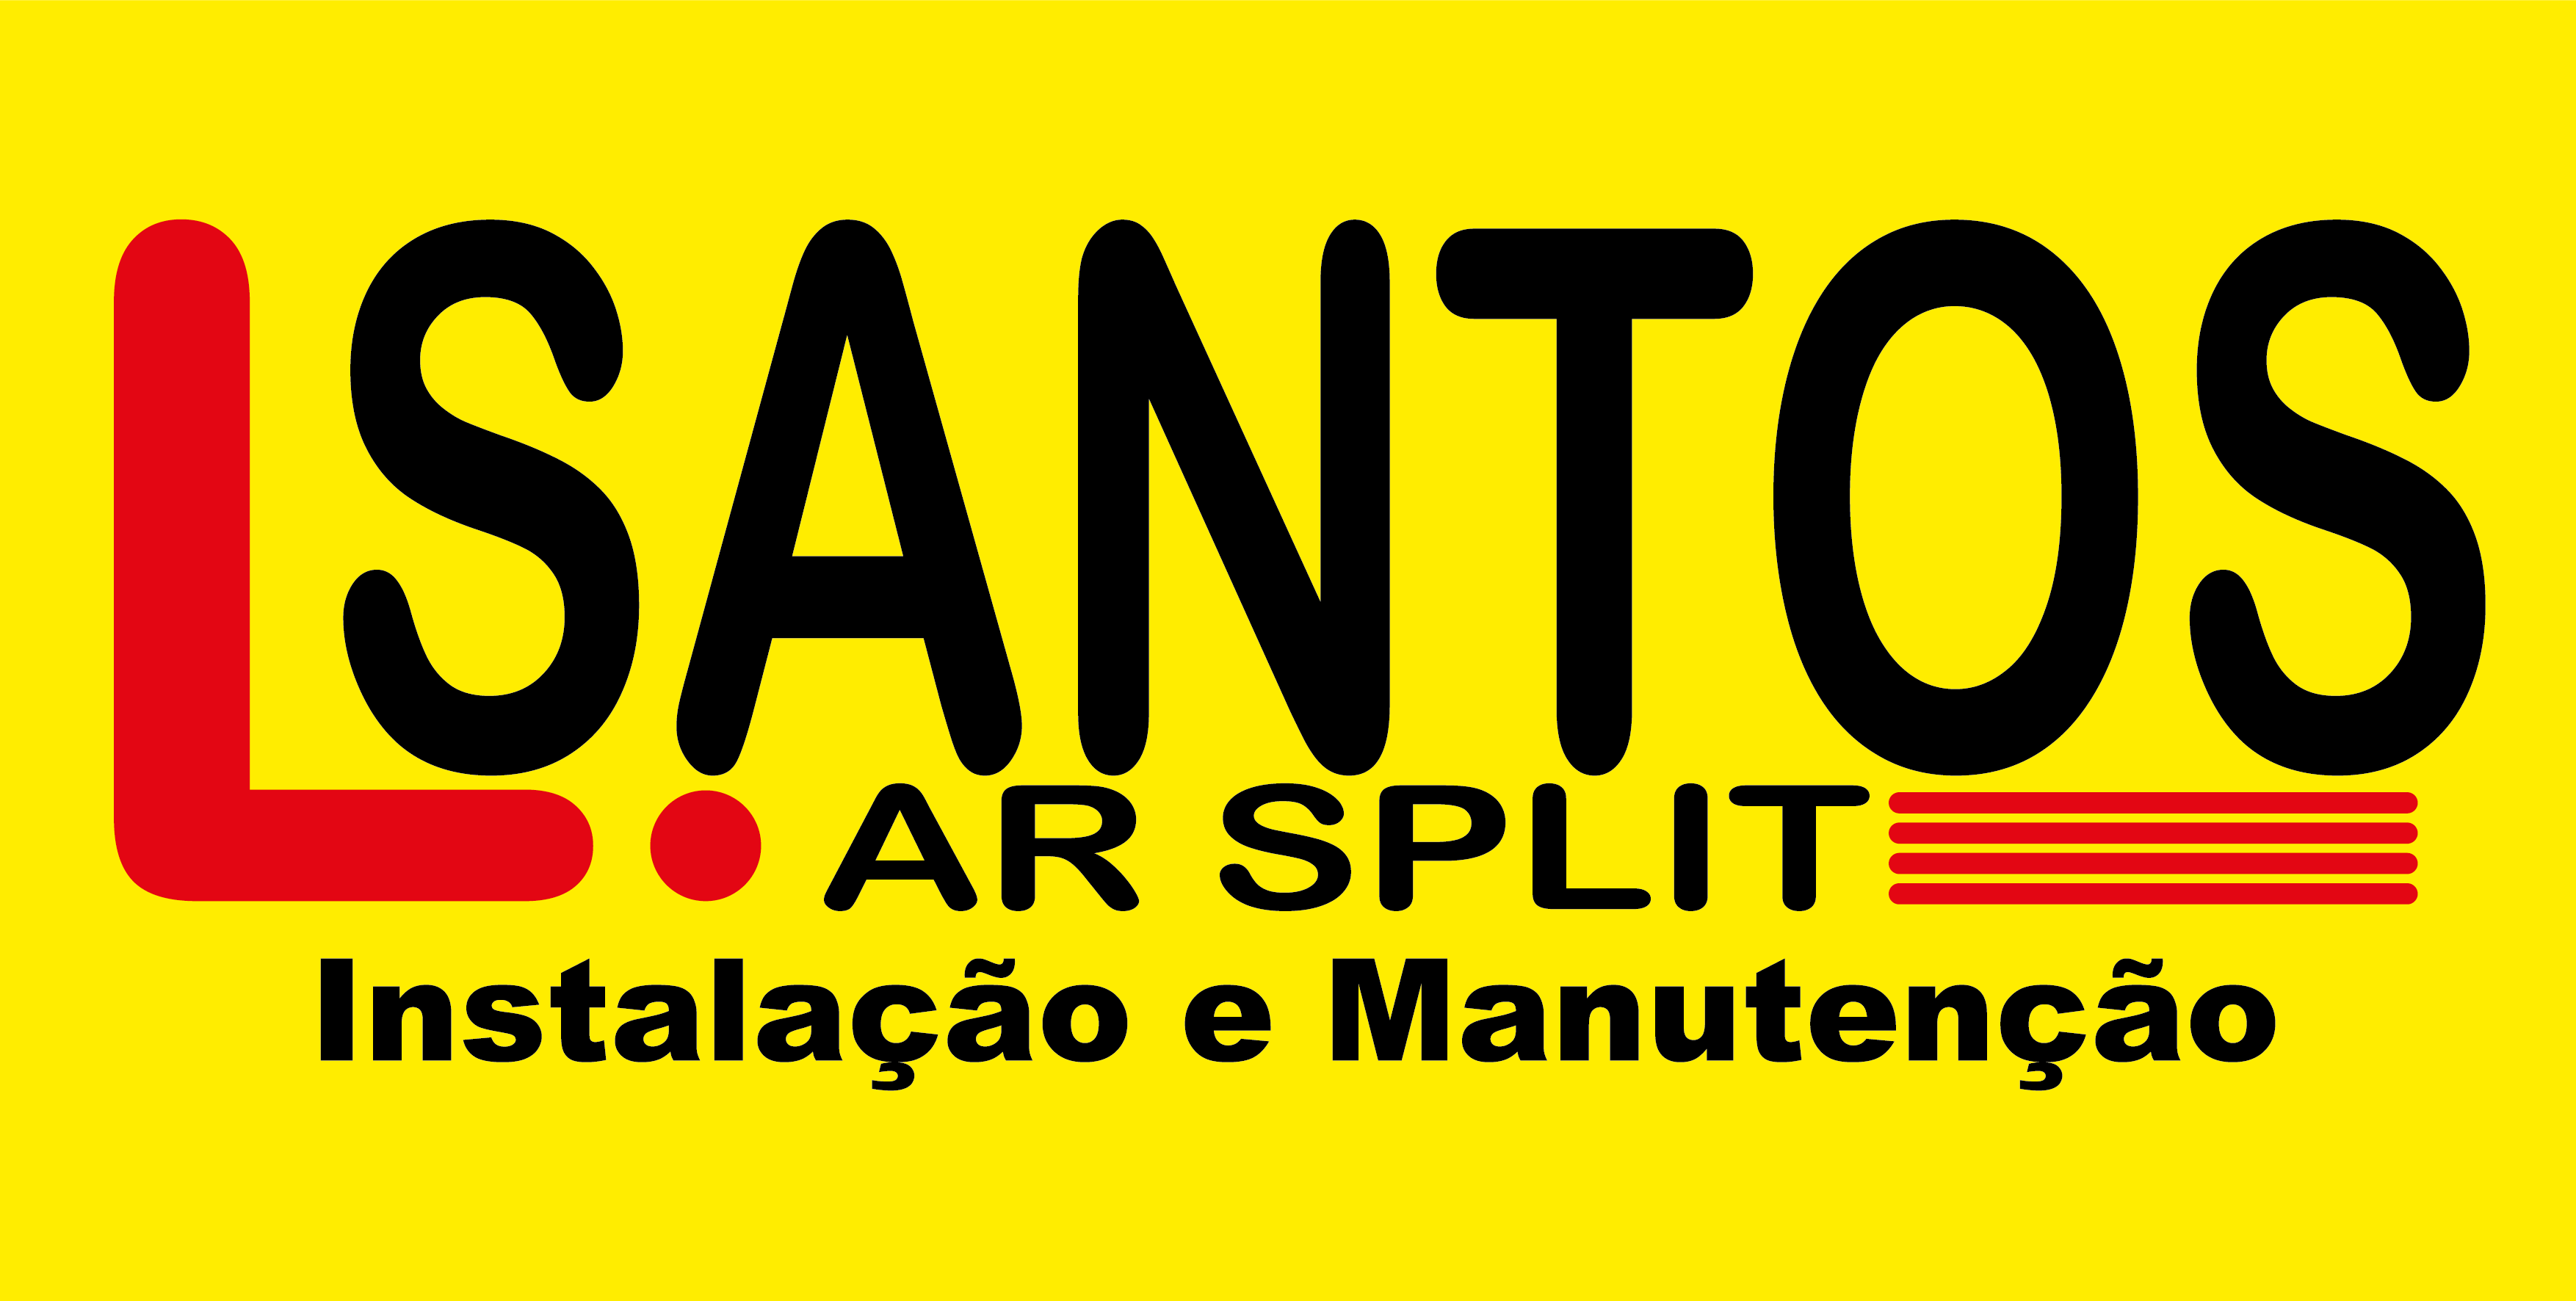 L Santos Ar Split